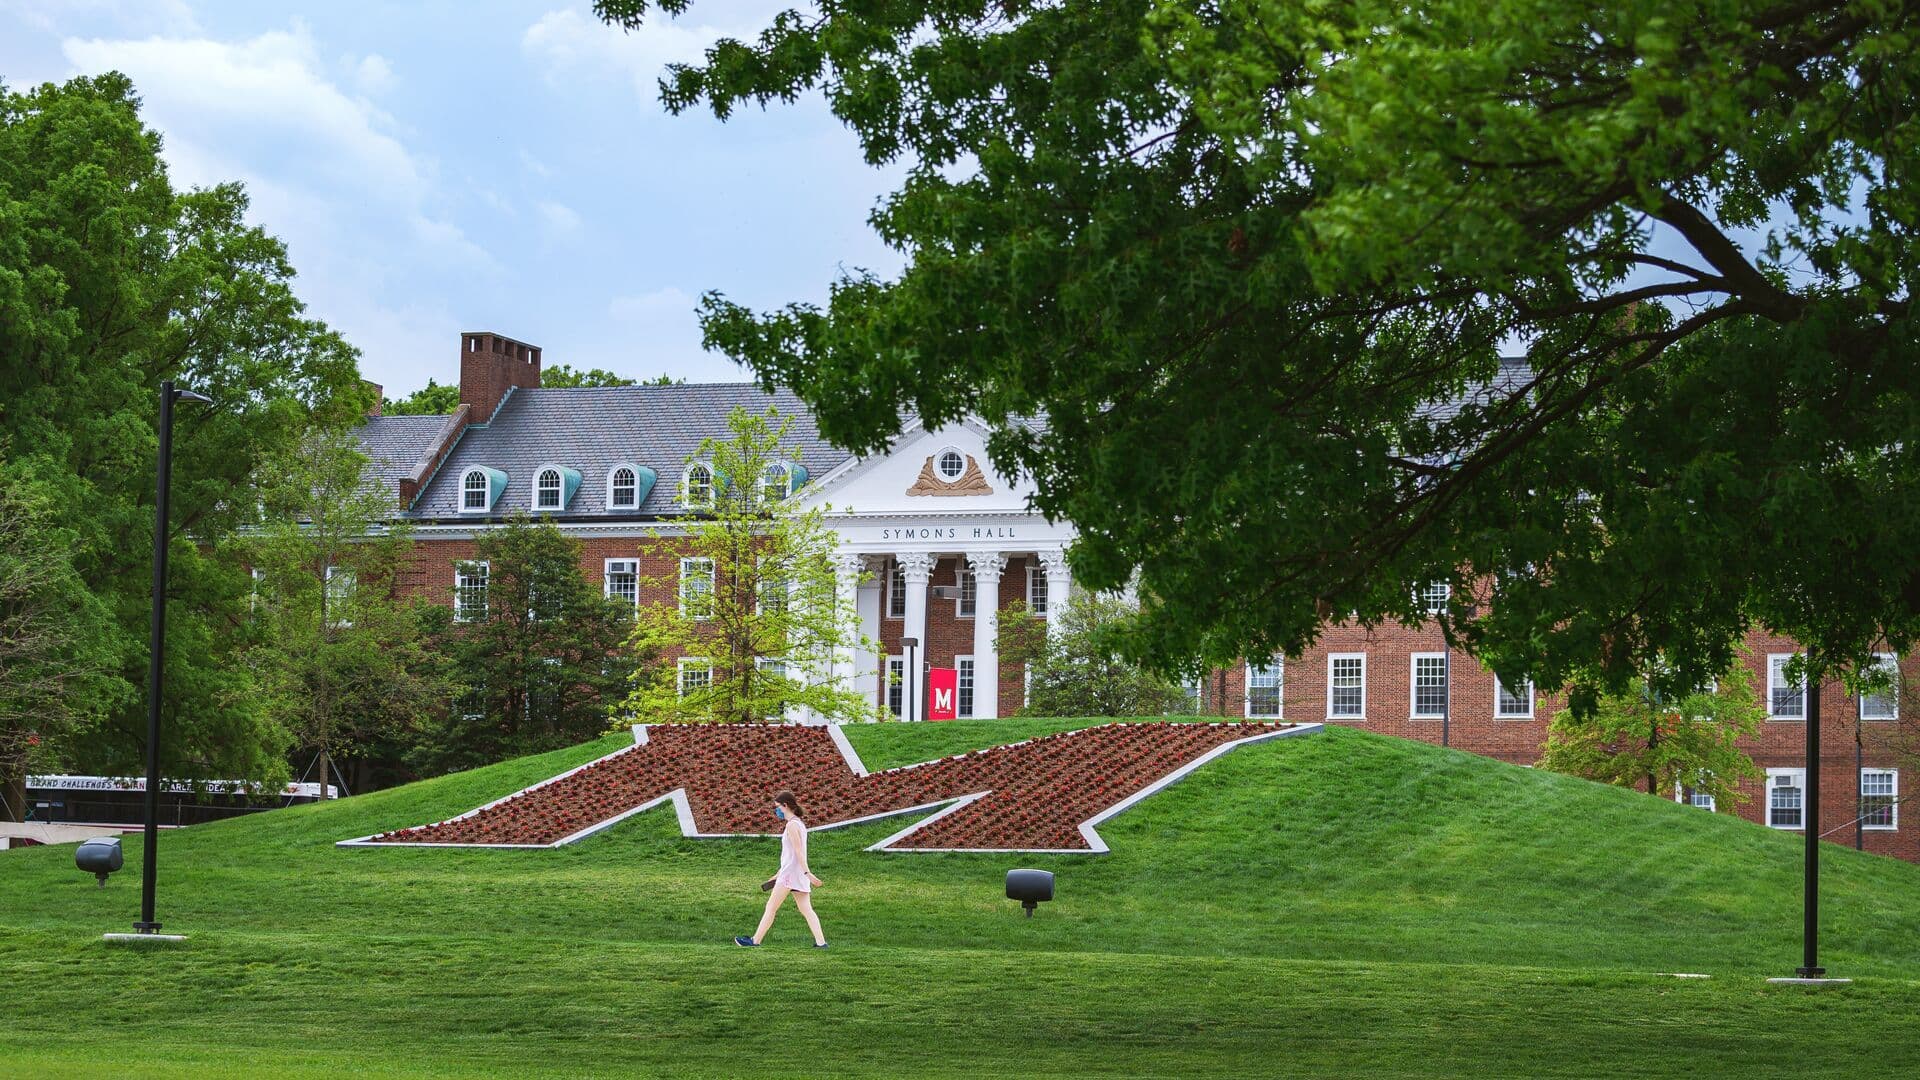 The University of Maryland M Circle.